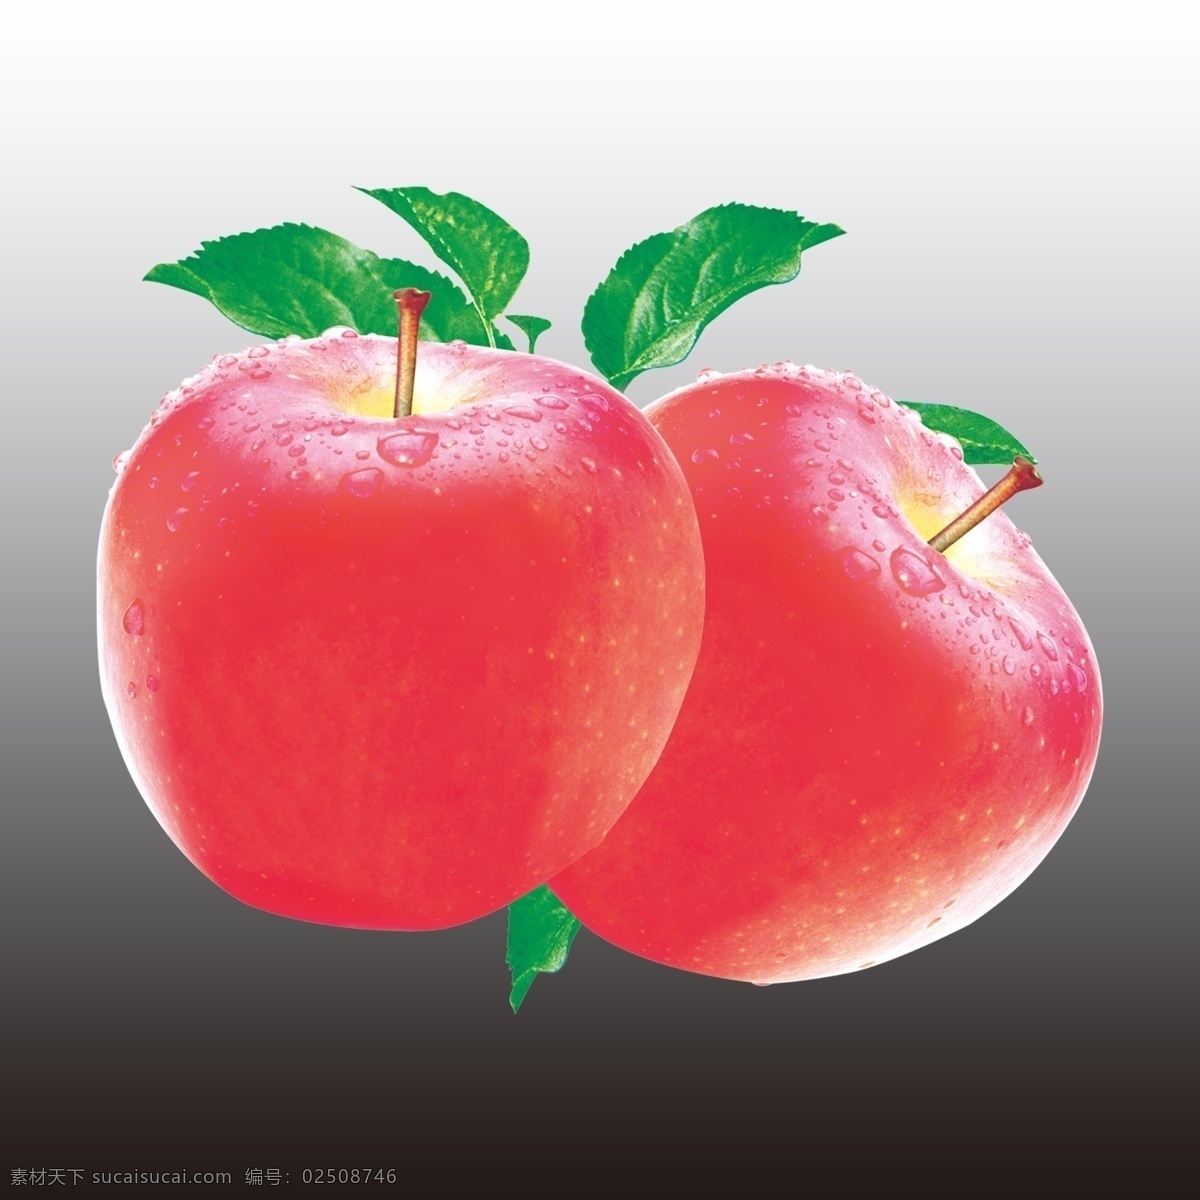 苹果 大红苹果 红富士 绿叶 分层文件 分层 源文件